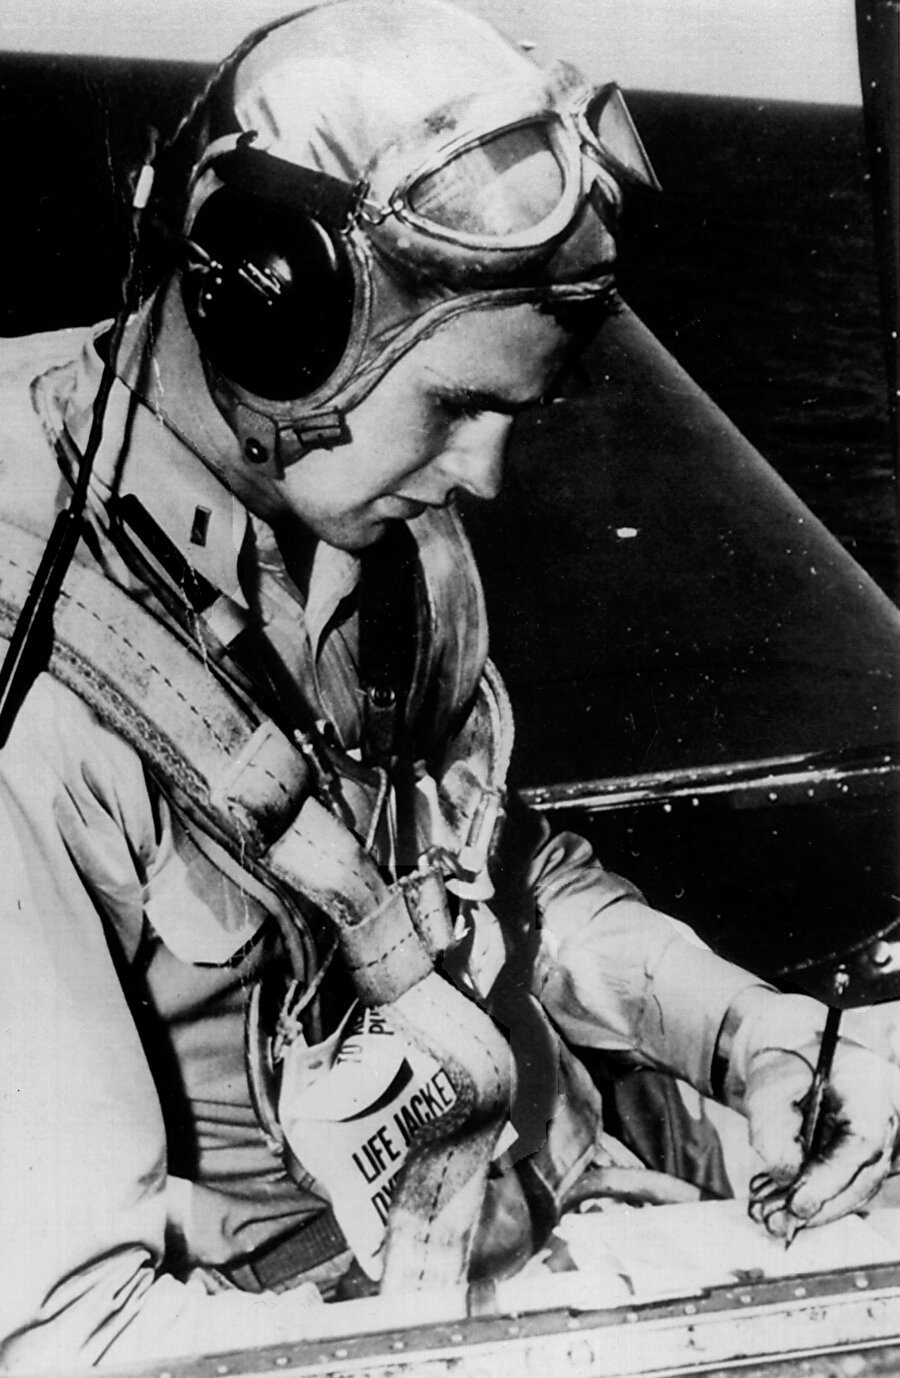 Torpido bombardıman pilotu

                                    II. Dünya Savaşı sırasında (1942-44) Büyük Okyanus'taki uçak gemilerinde torpido bombardıman pilotu olarak görev yaptı. Üstün Uçuş Nişanı'nı kazandı. ABD başkan ve başkan yardımcıları içinde en yaşlı olan 2. Dünya savaşı gazisi unvanını aldı. 1942 yılında akademiyi bitirmesinin akabinde Deniz Kuvvetleri’ne yedek subay olarak katıldı, II Dünya Savaşı dönemi 1941-1944 yılları arasında torpido bombardıman pilotu olarak görev yaptı. Bush’un, 2. Dünya savaşında orduda aldığı görevler ve başarıları hayatının sonraki dönemlerini önemli ölçüde etkiledi. 1943 yılında Filipin Denizi Savaşında hava operasyonunu gerçekleştiren ekipte yer aldı. 1944 yılında teğmenliğe yükseldi. Japonların Chichijima yerleşkesine gerçekleştirdiği hava operasyonunda Japon hava bataryaları tarafından uçağının vurulmasına rağmen motorunun alev alması üzerine uçaktan atlayarak kurtuldu. 1944 yılı boyunca 58 uçuş gerçekleştirdi. Bunun neticesinde üç uçuş madalyası, üstün uçuş madalyası ve başkanlık birlik savaş madalyası aldı.
                                